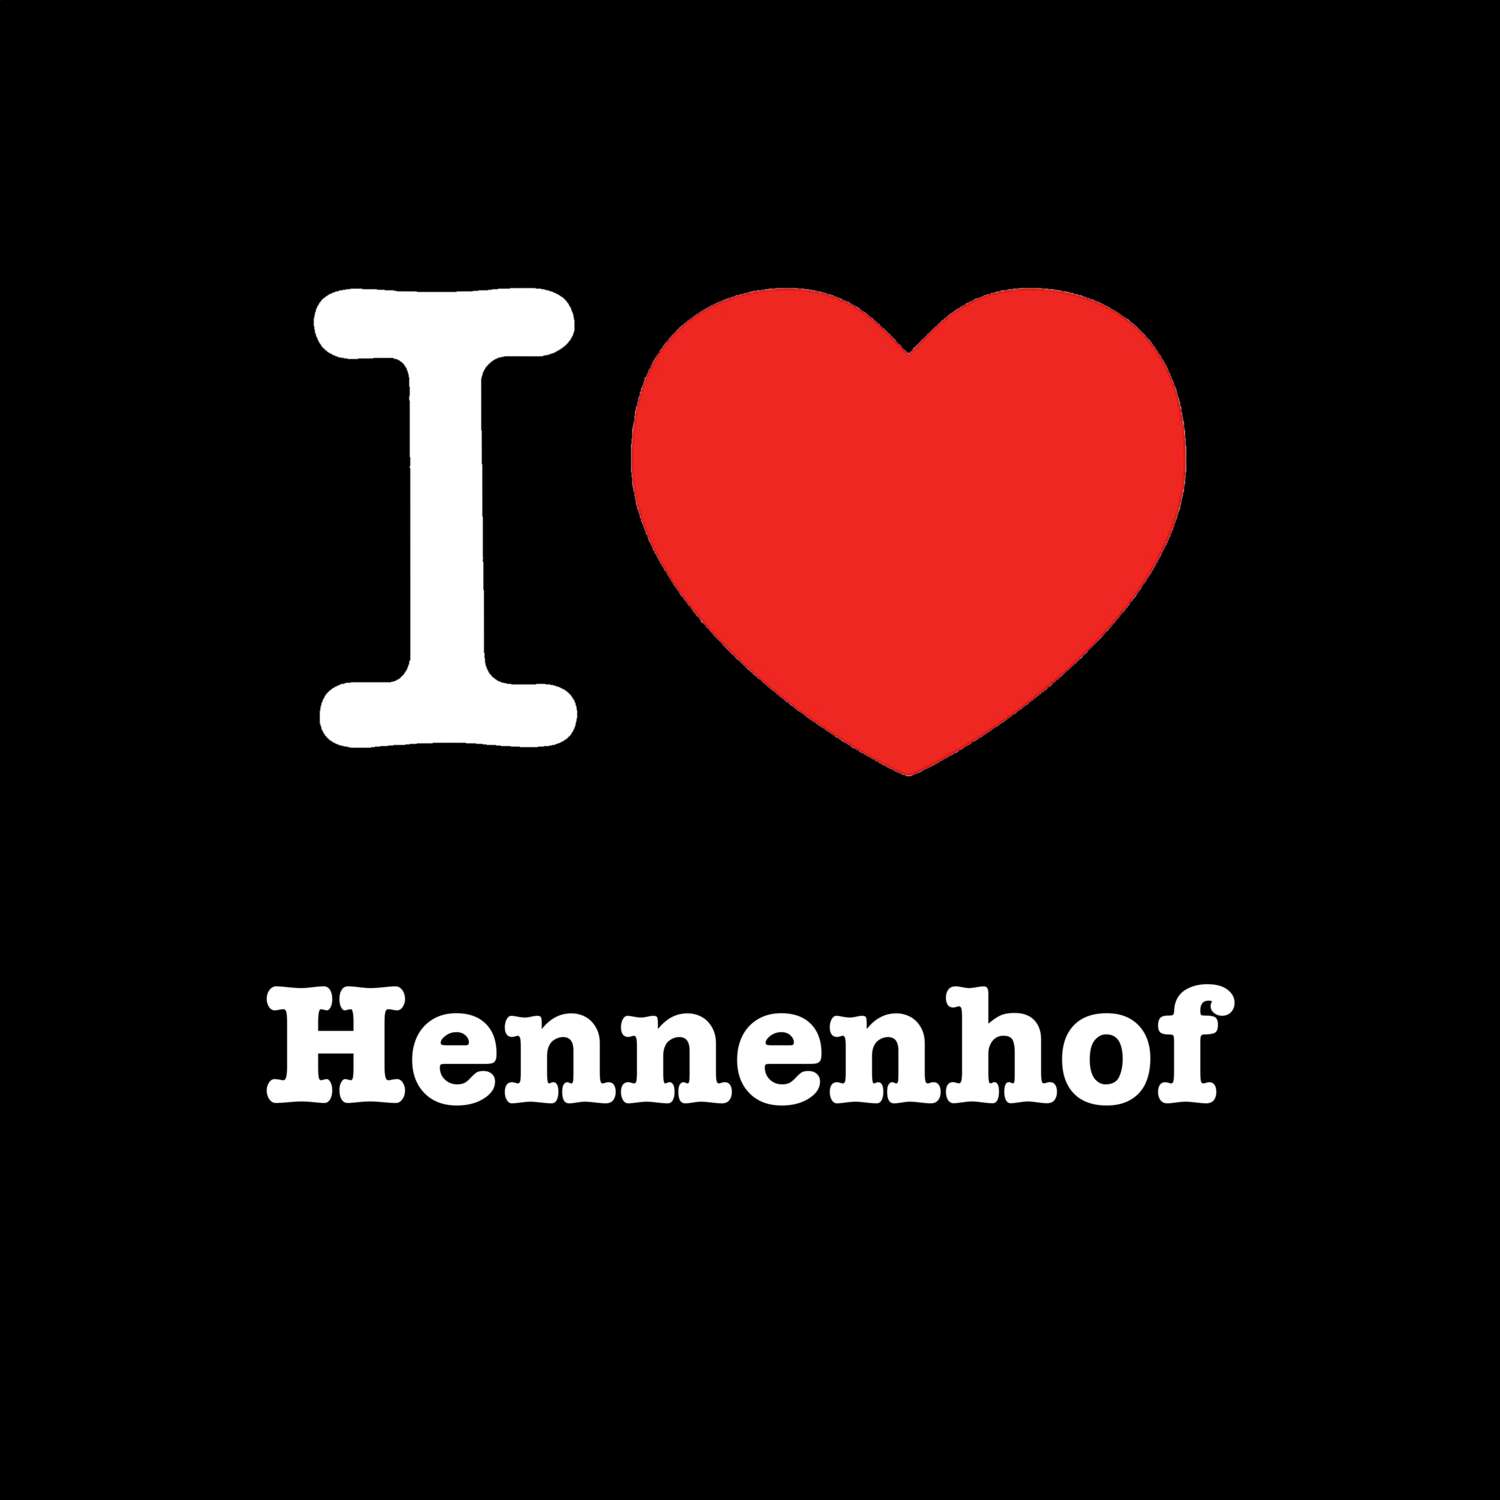 Hennenhof T-Shirt »I love«